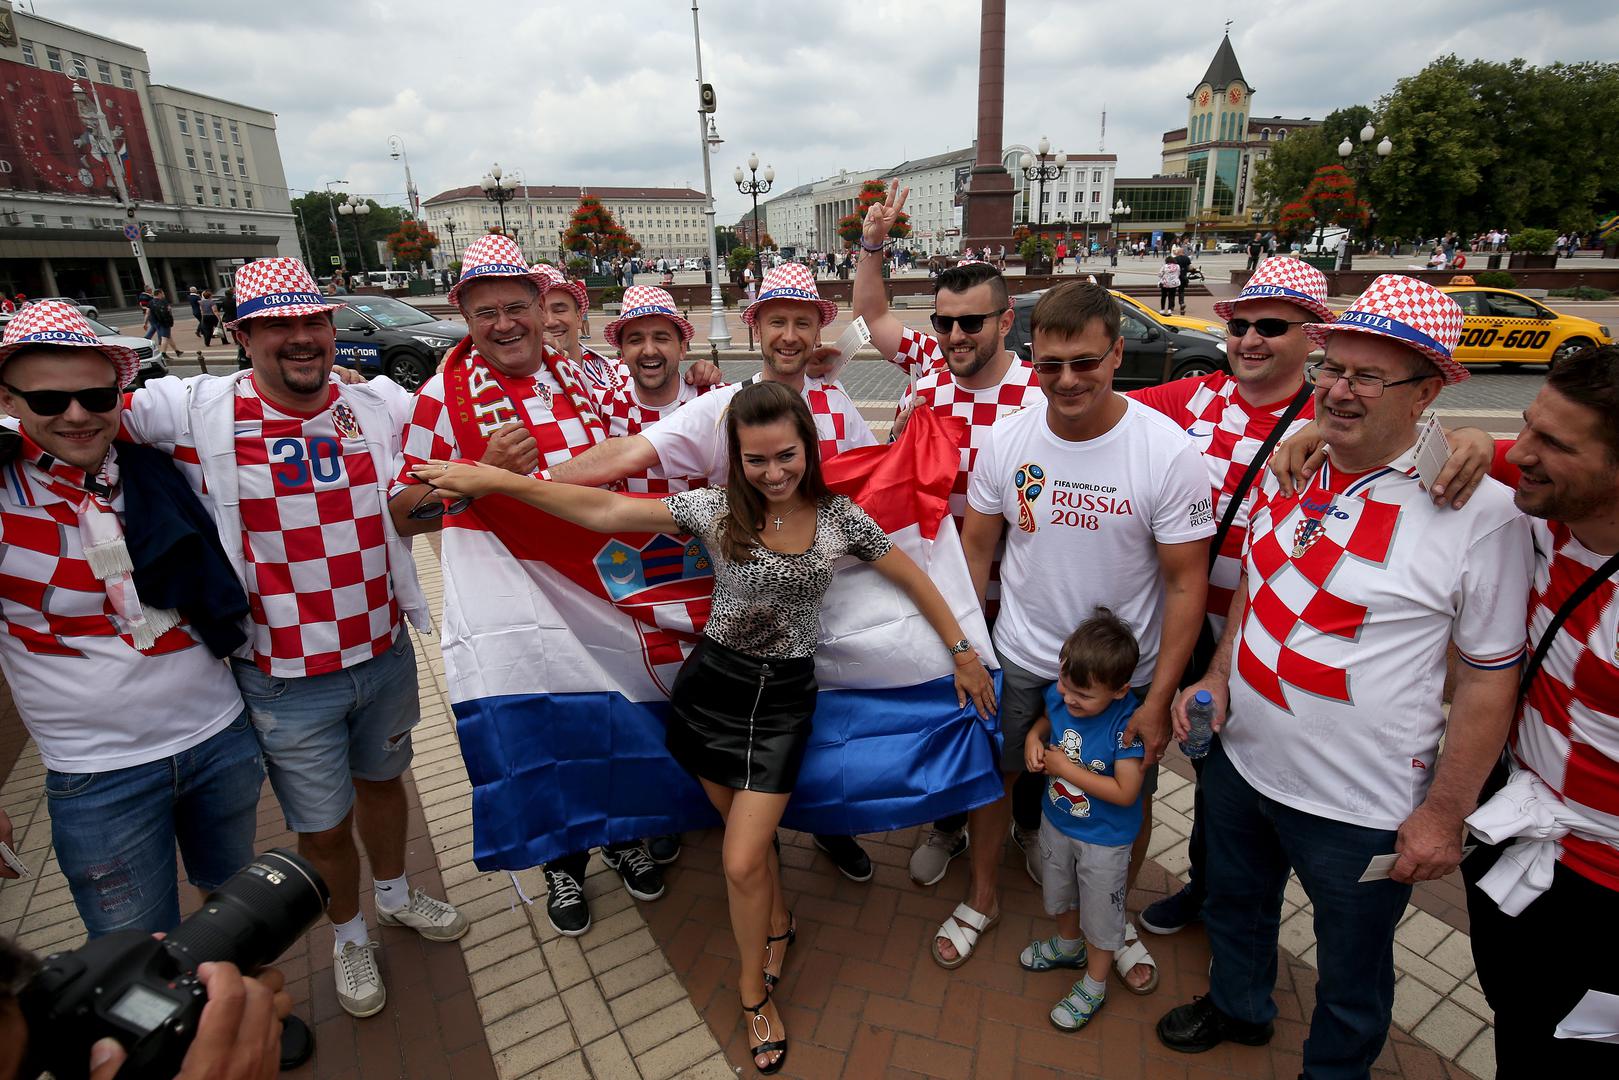 Hrvatski navijači ispunili su Kalinjingrad, a među njima su bile i atraktivne djevojke